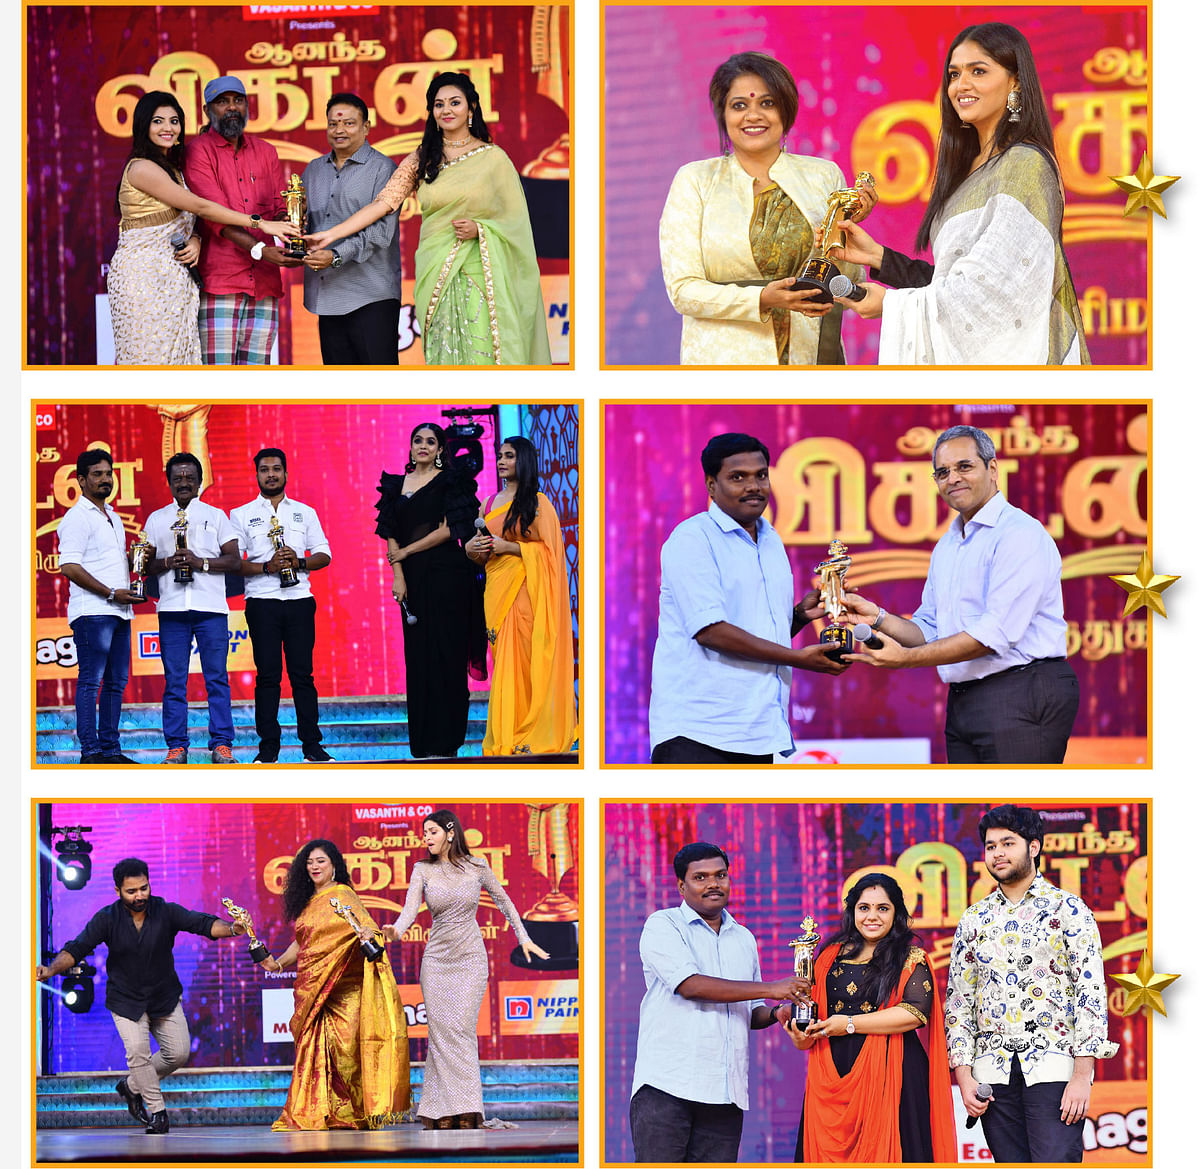 ஆனந்த விகடன் சினிமா விருதுகள் - 2019